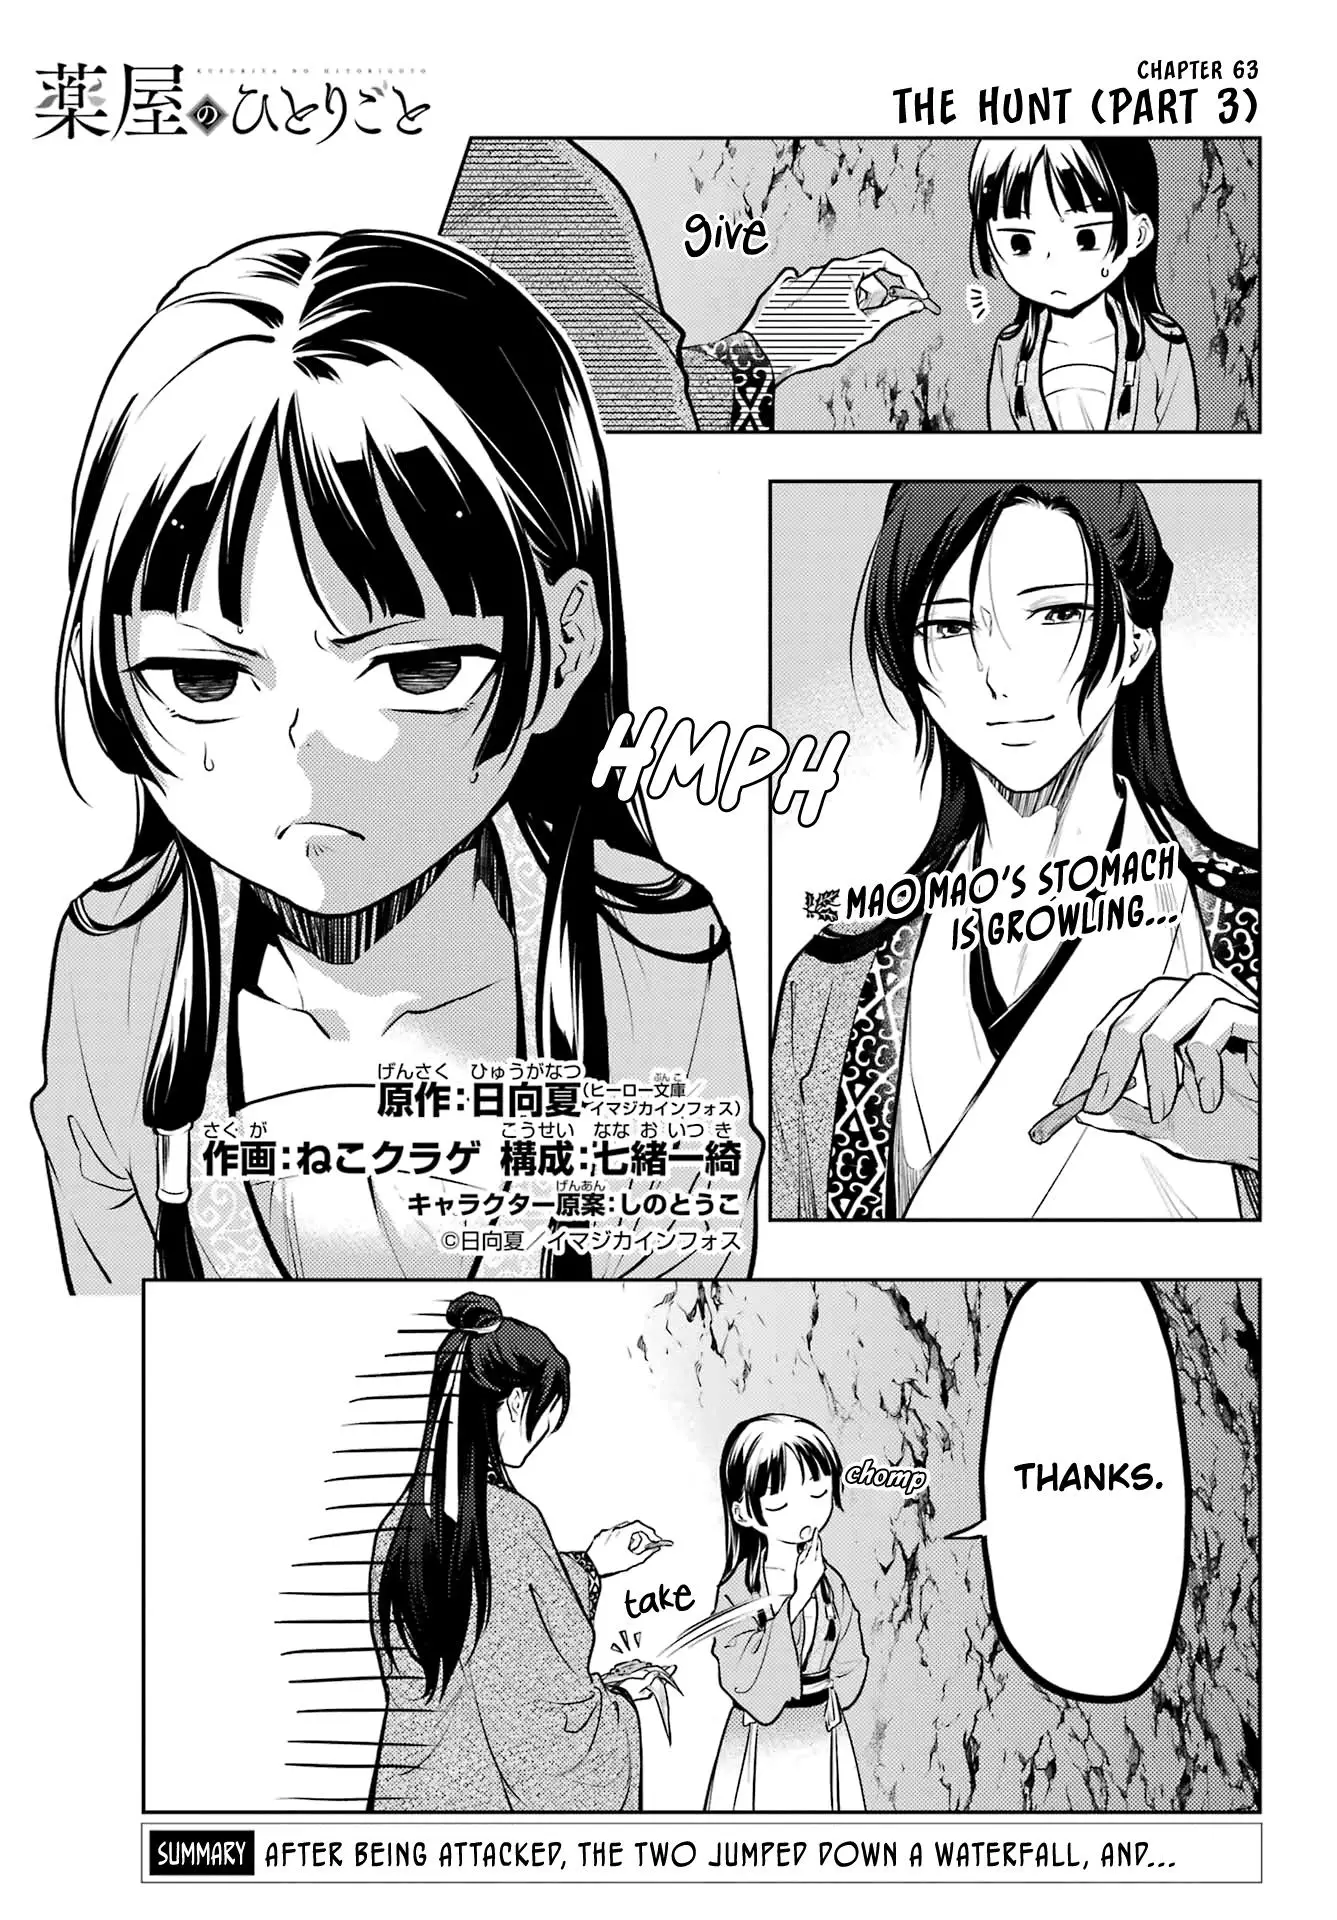 Kusuriya no Hitorigoto - 63 page 1-12e1adbd